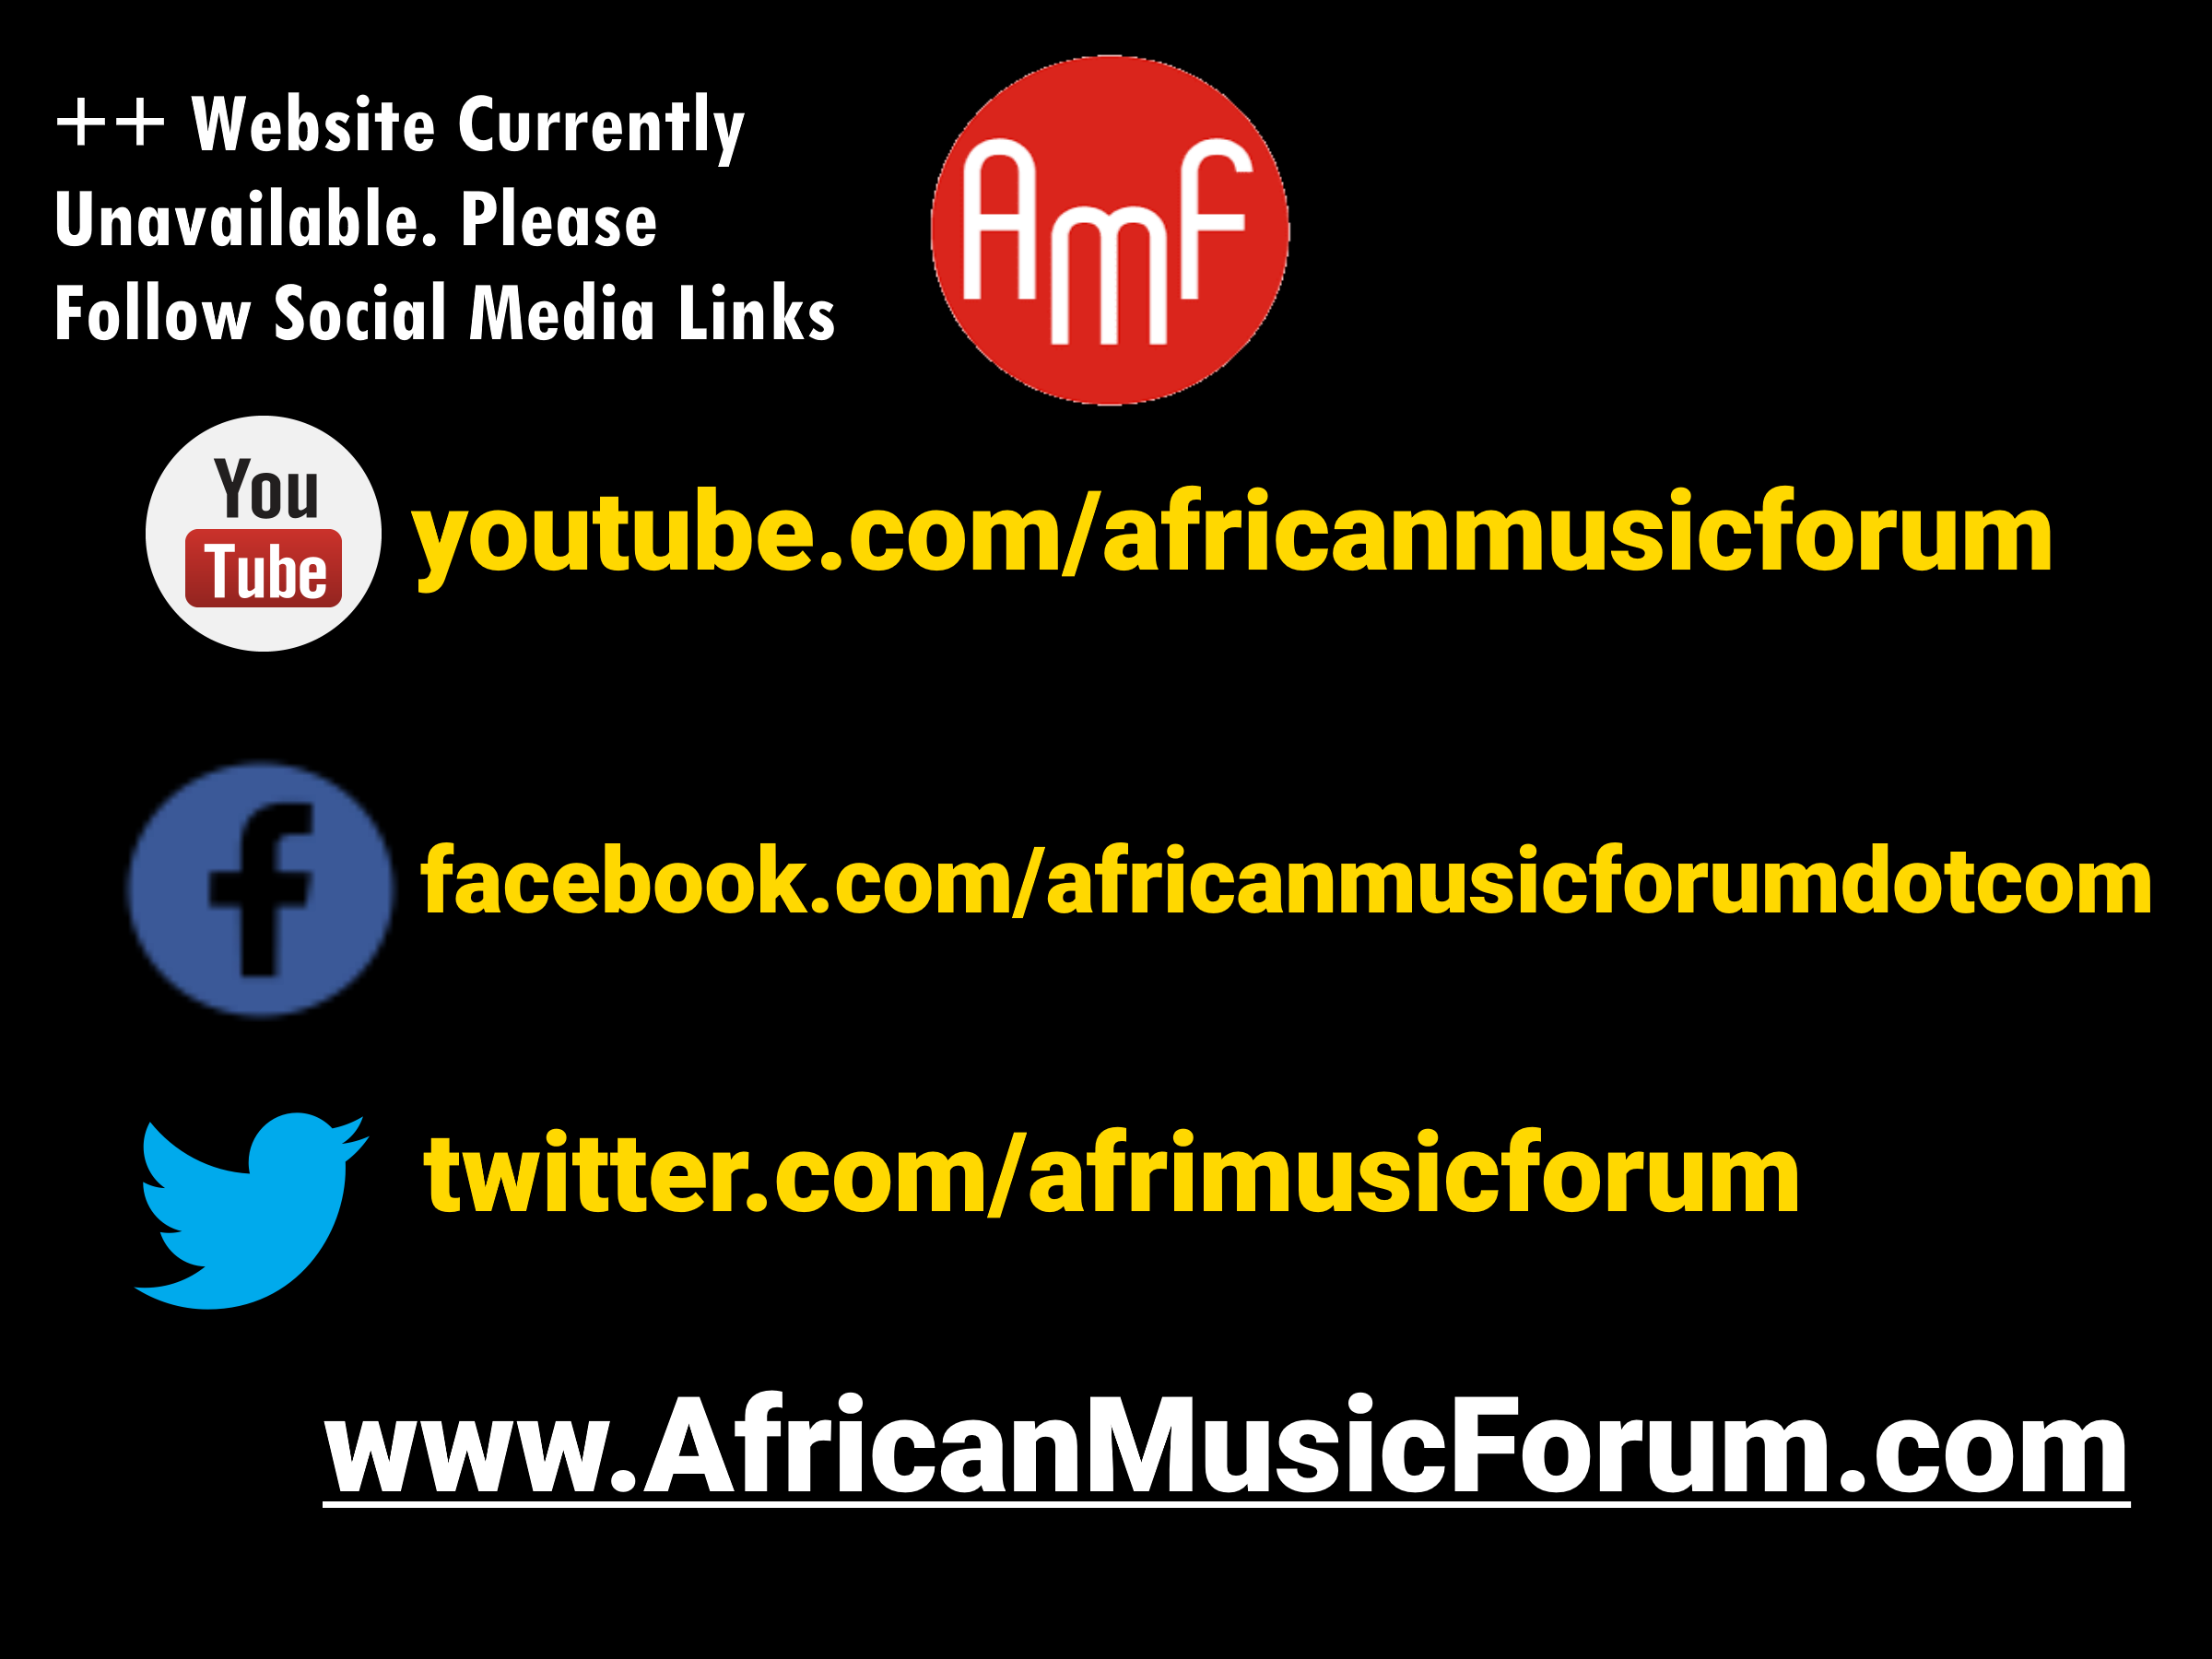 AfricanMusicForum.com